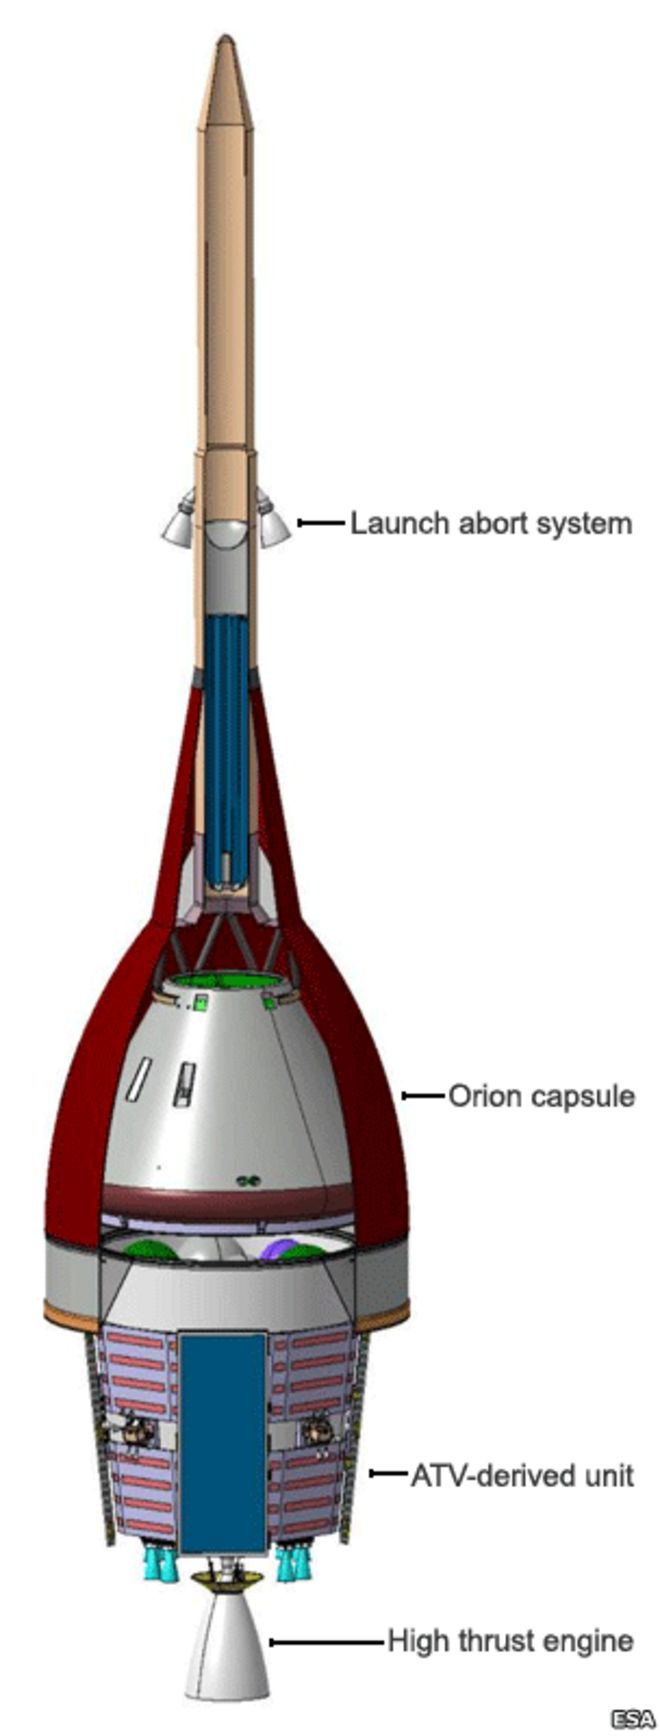 Капсула Orion и сервисный модуль ATV